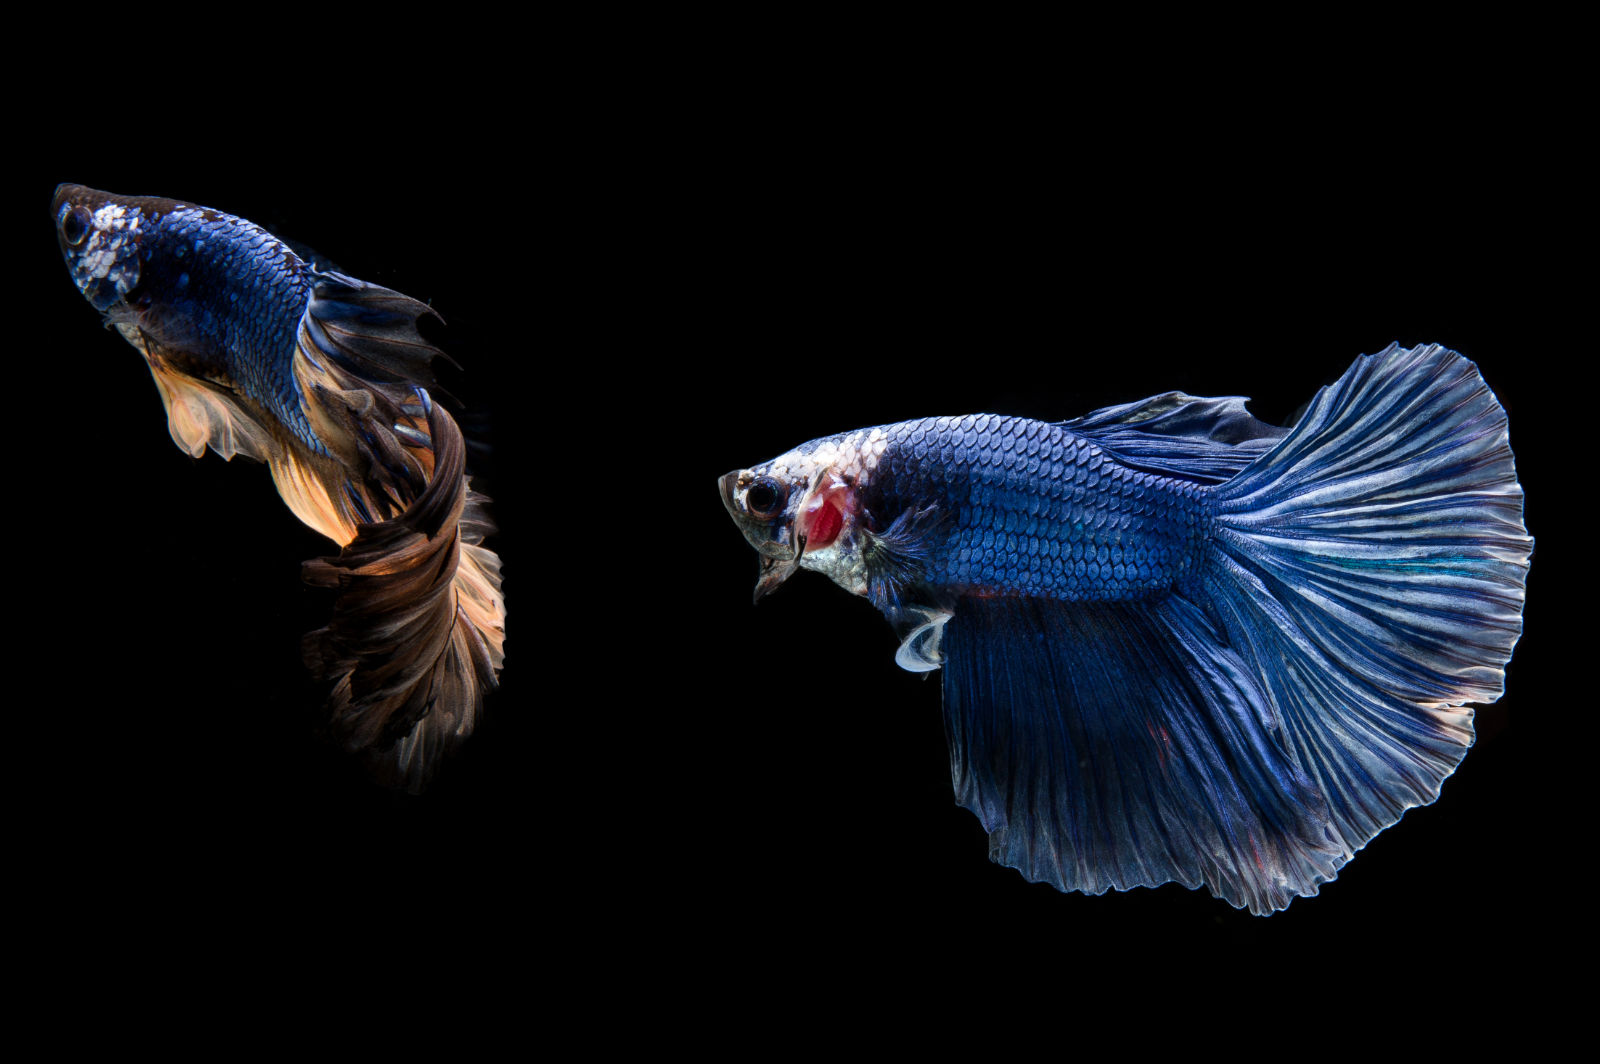 Pesce combattente (Betta splendens) - Due pesci blu